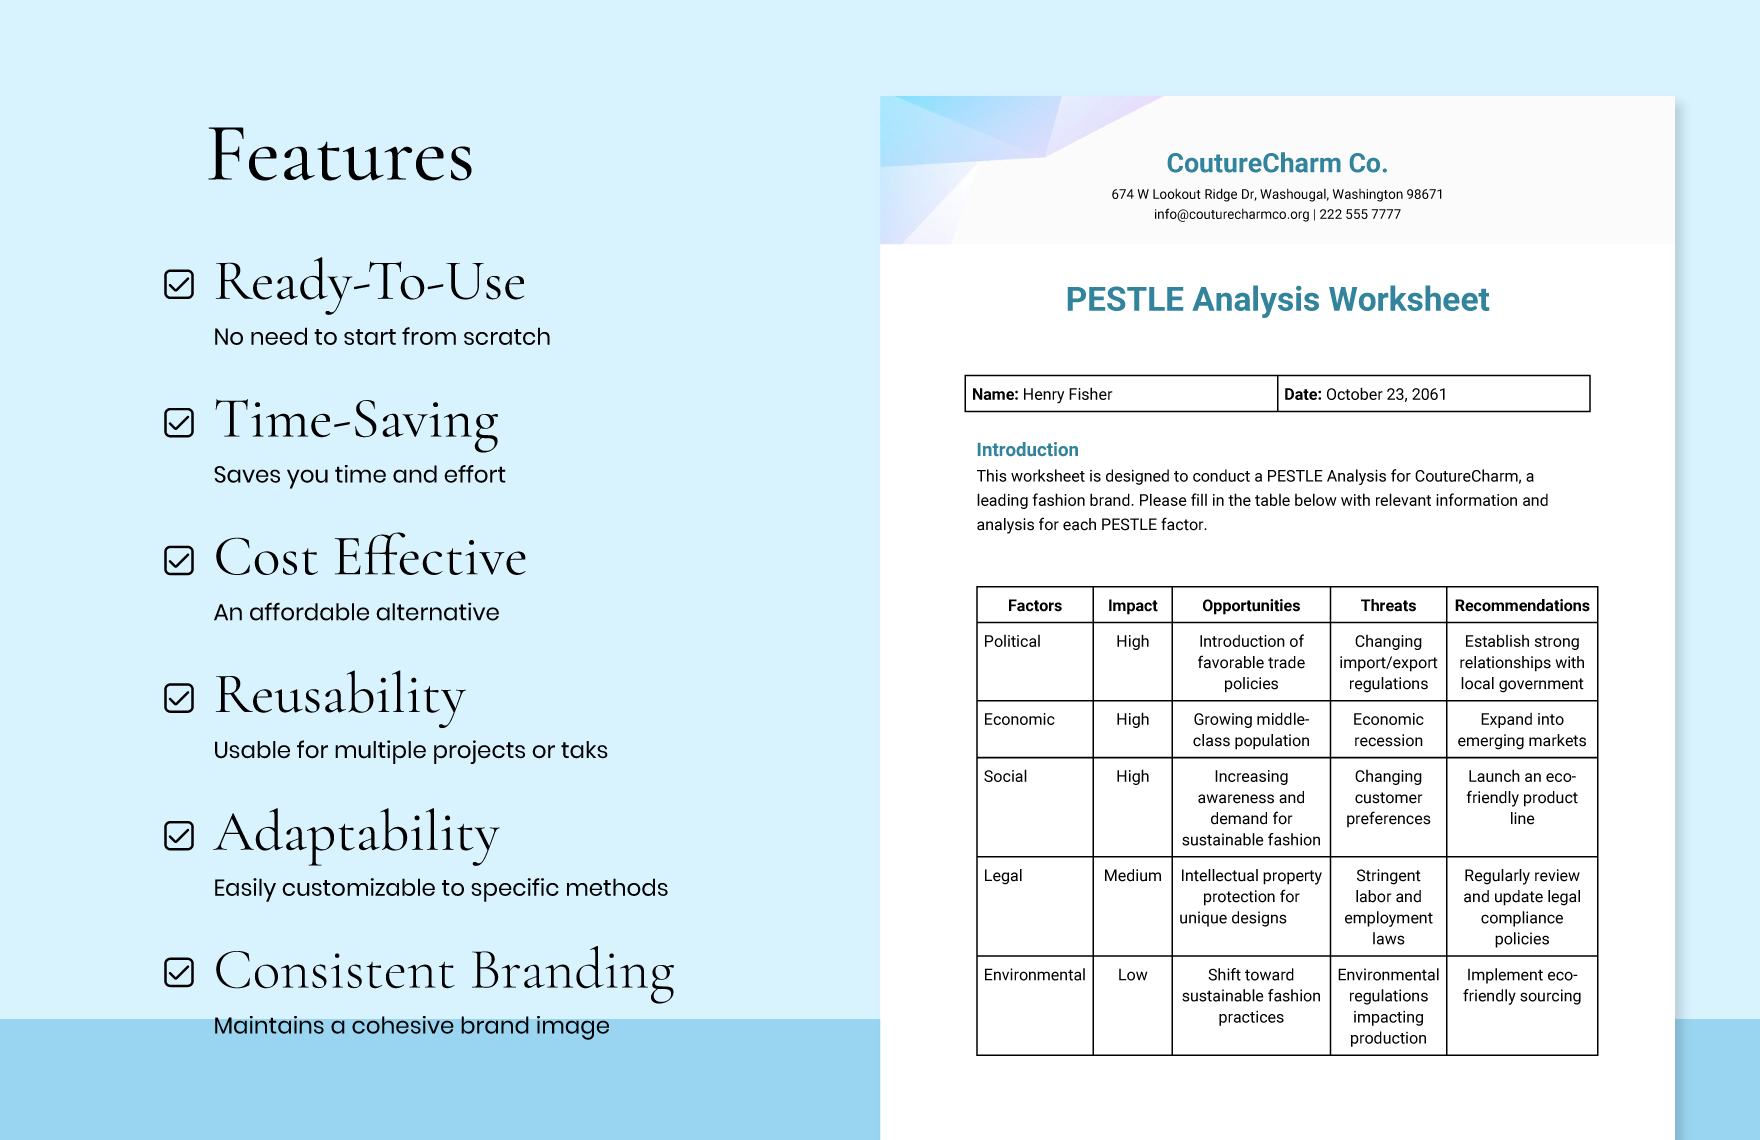 PESTLE Analysis Worksheet Template